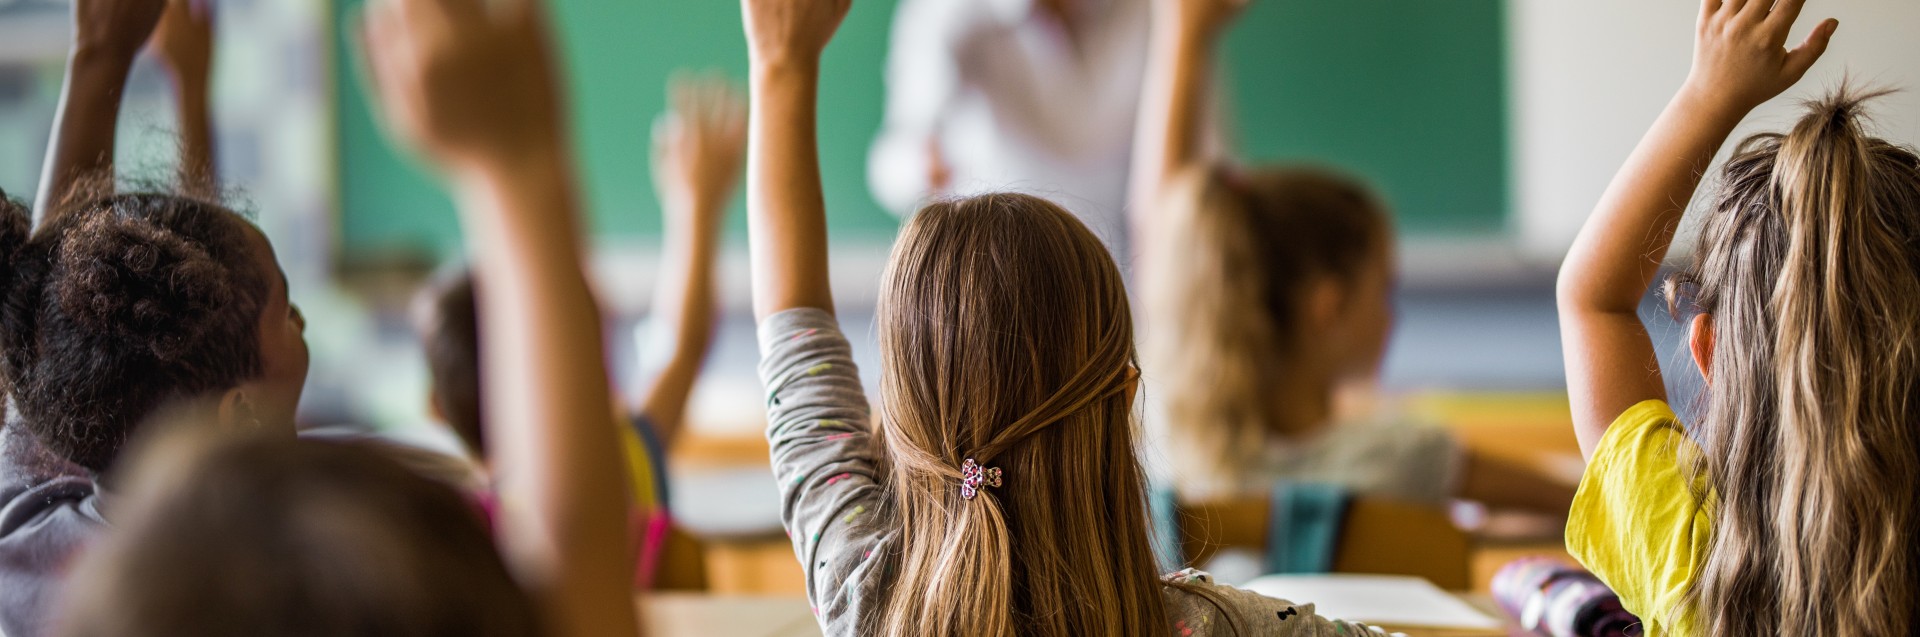 Barn i et klasseom rekker opp hendene